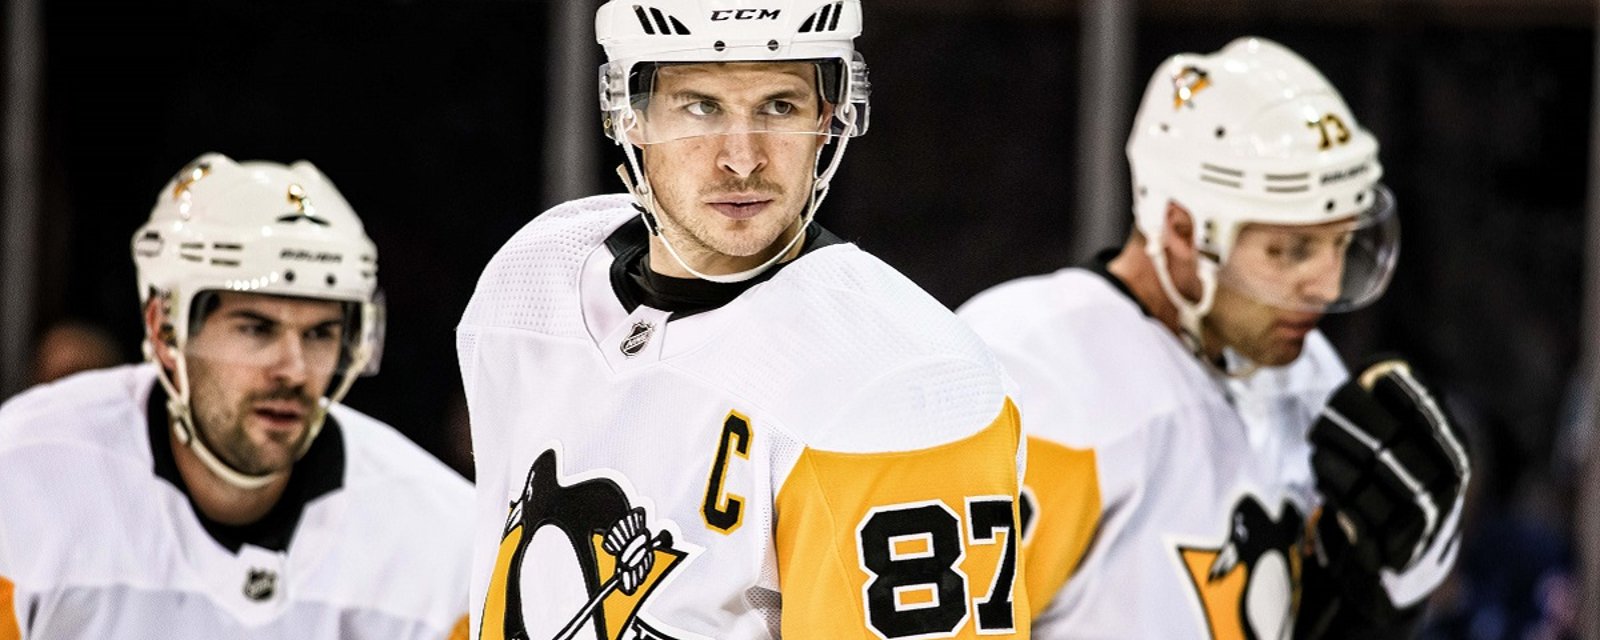 Huge update on injured Penguins captain Sidney Crosby.